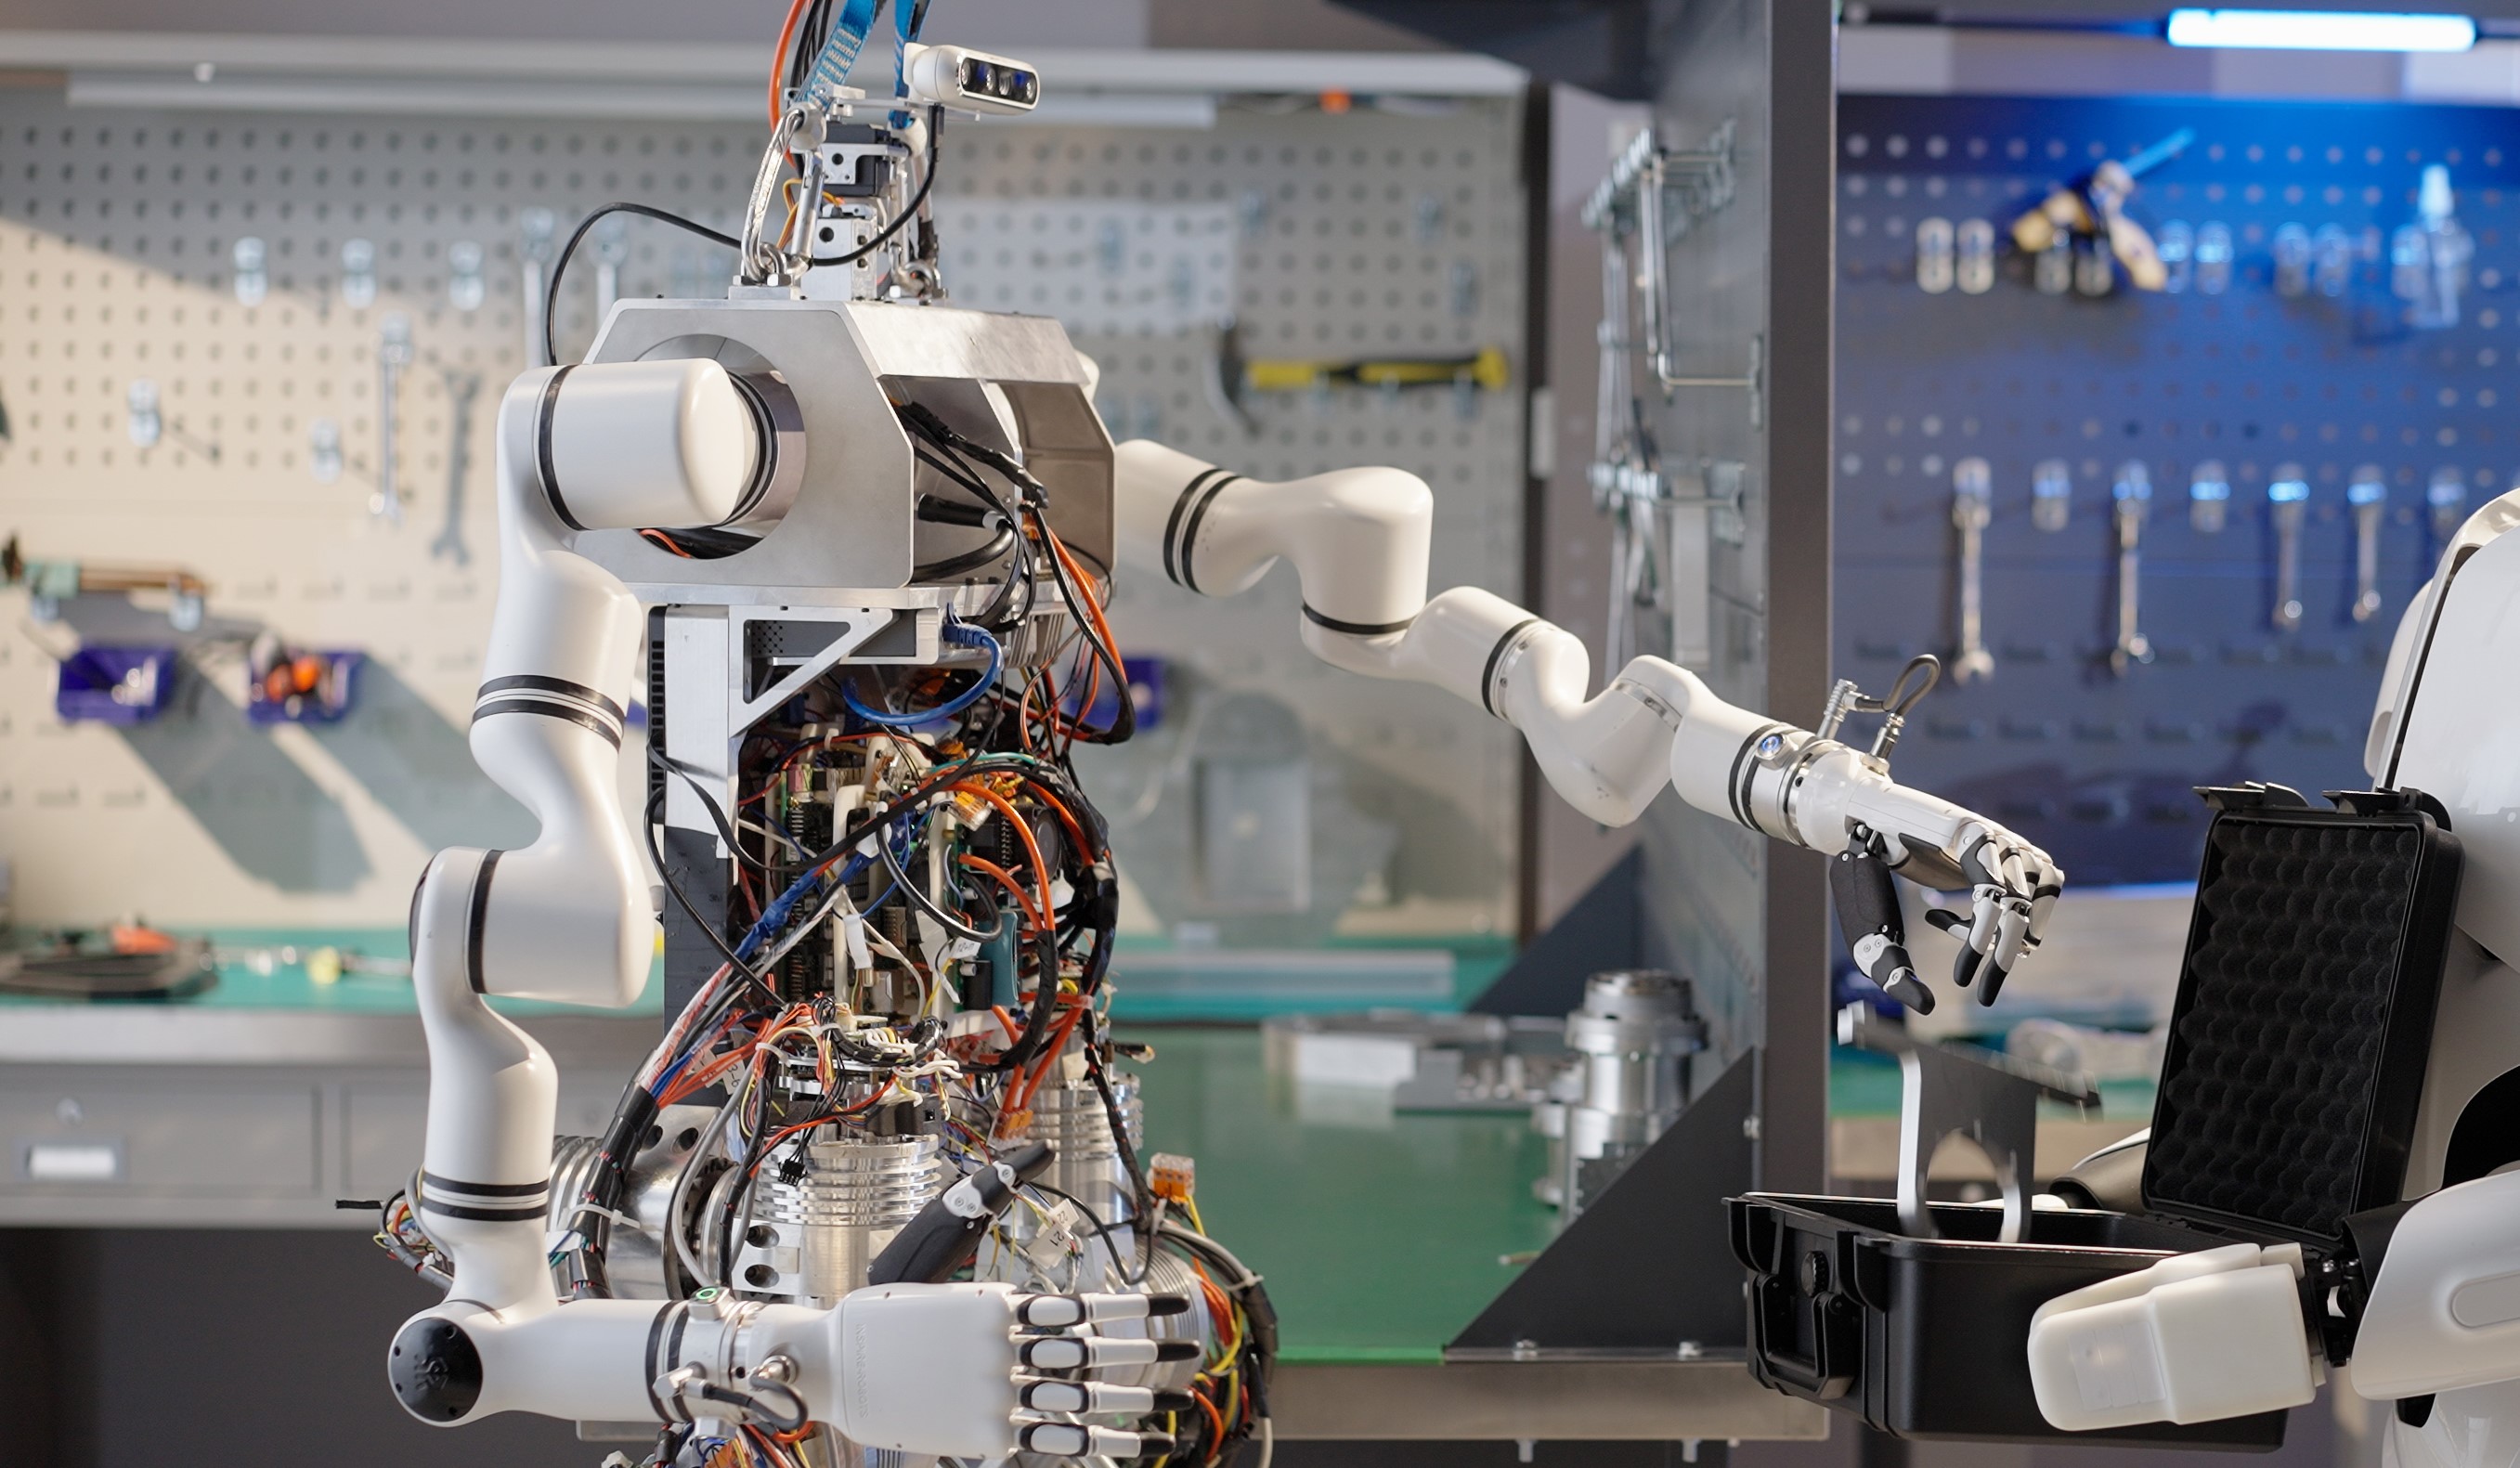 中国科学院自动化研究所研发Q系列人形机器人系统